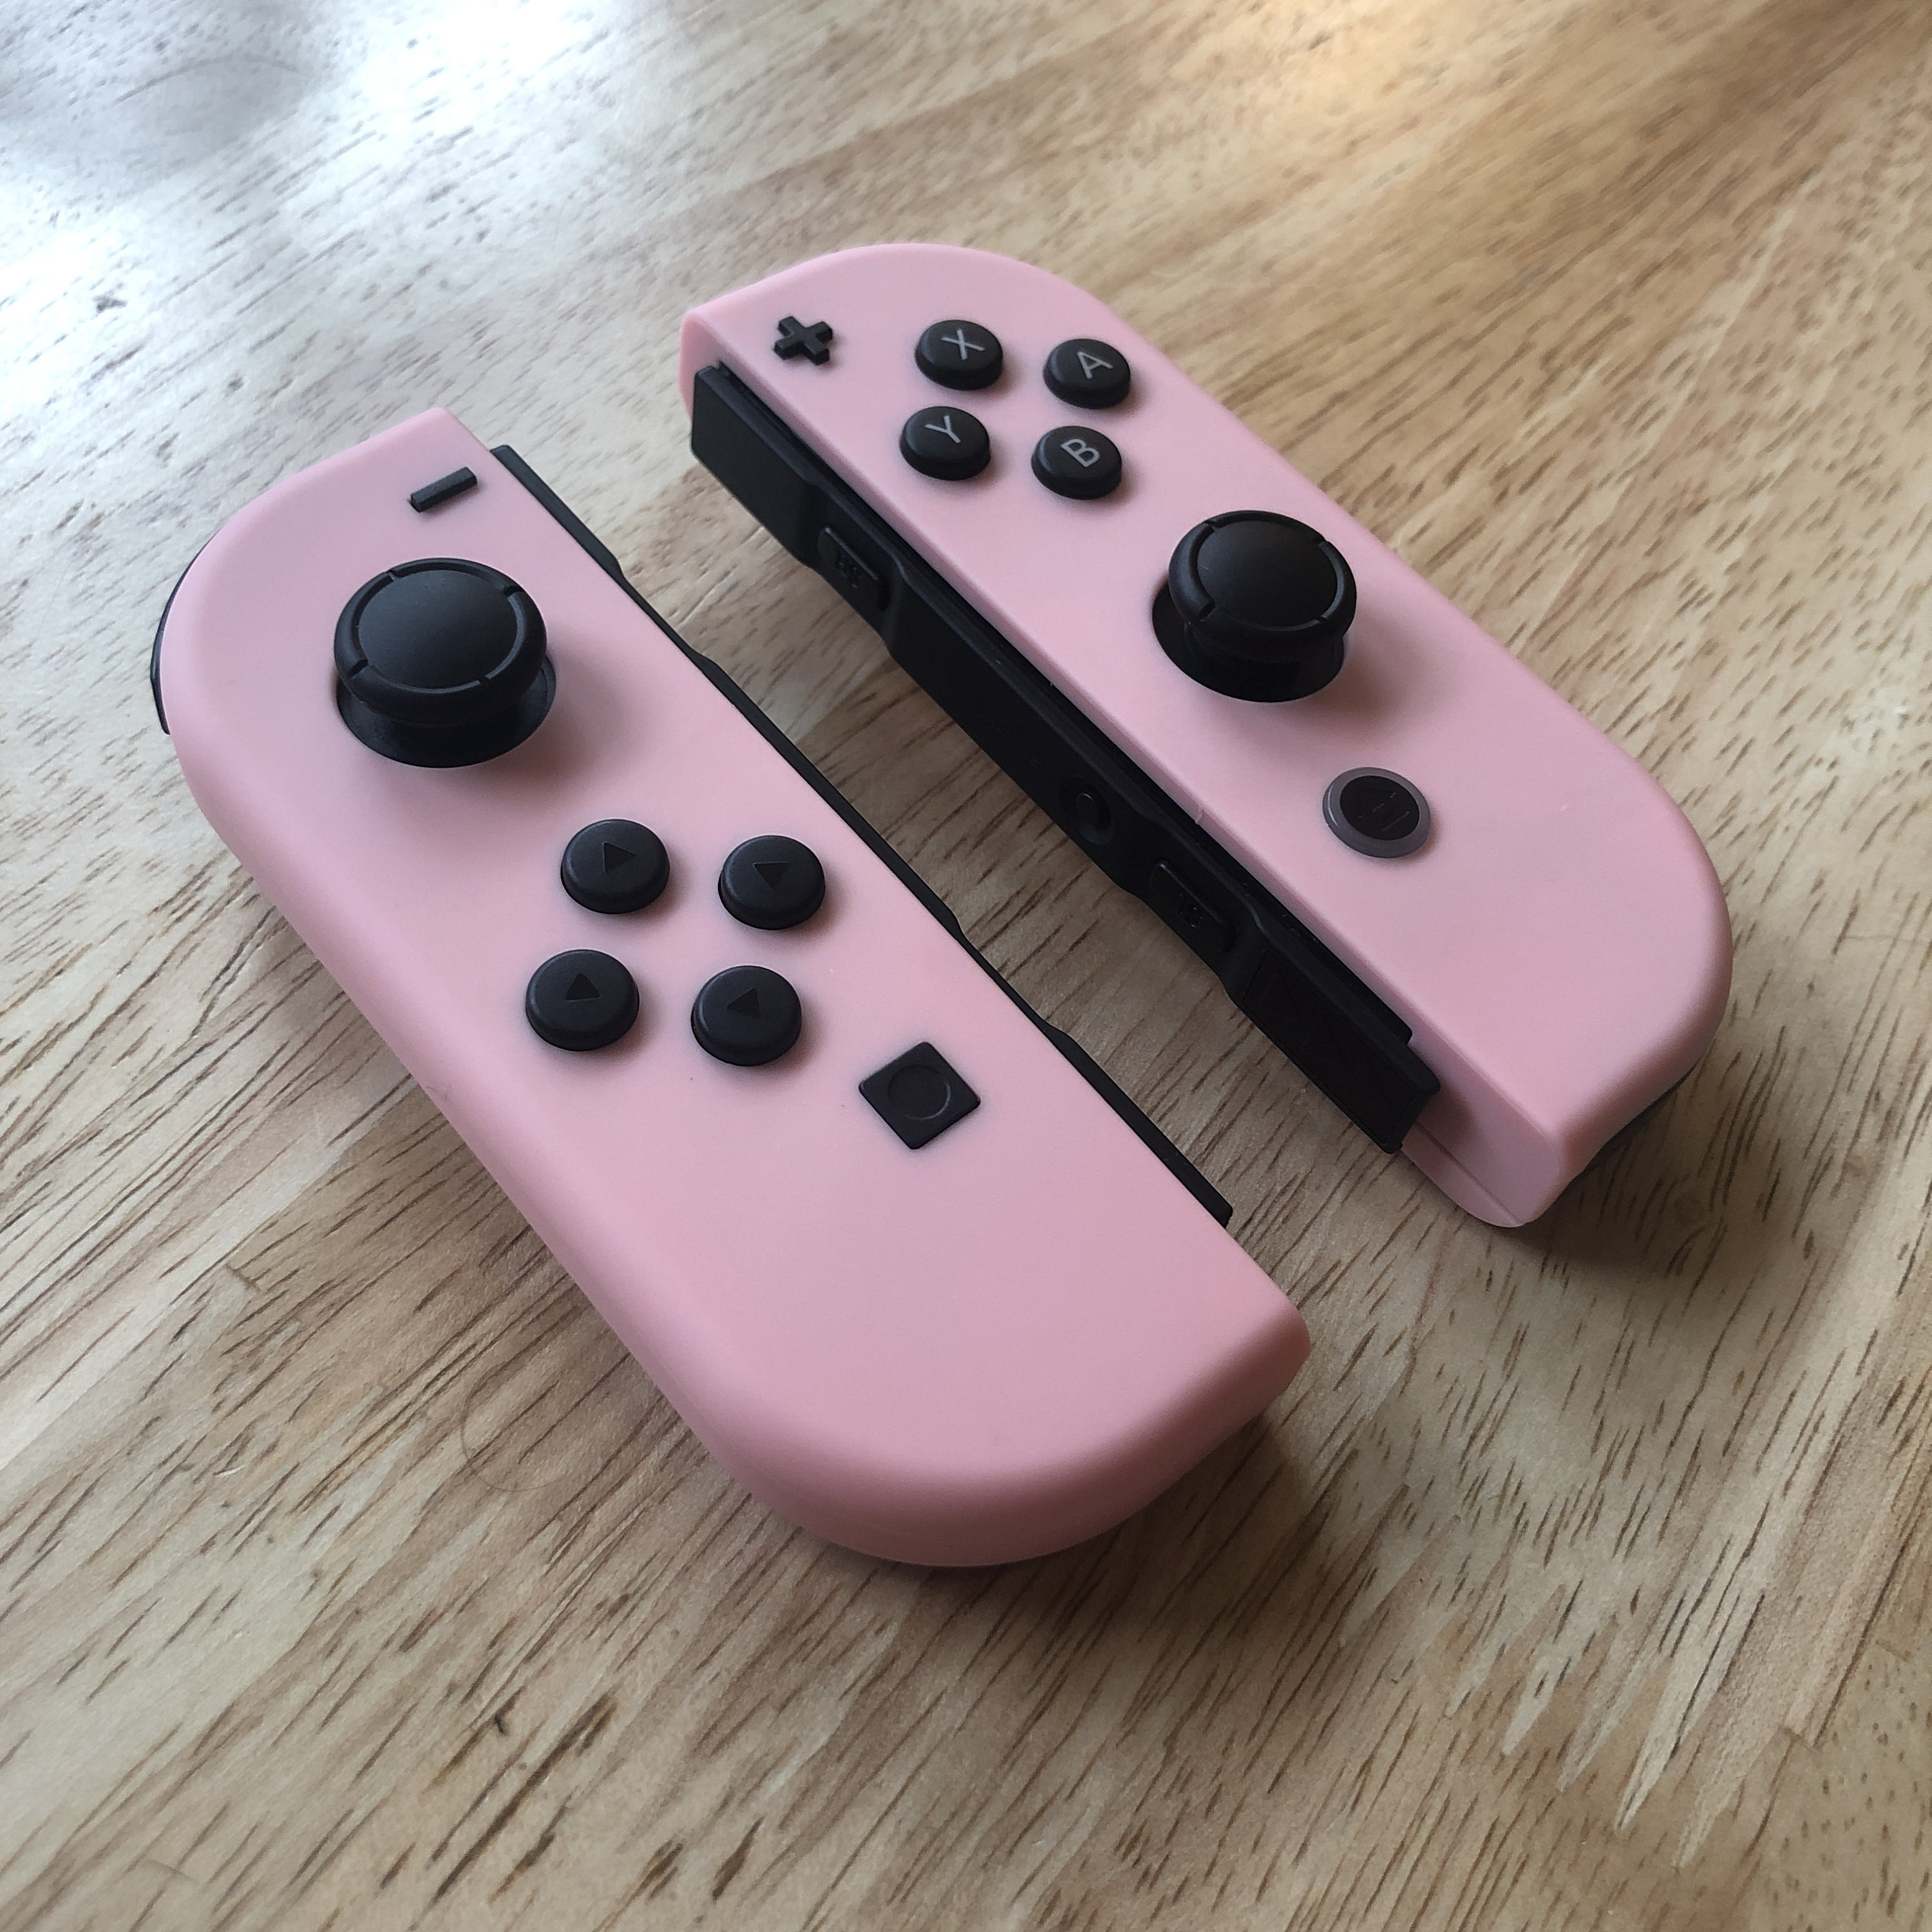 Contrôleurs Nintendo Switch Joy-Con personnalisés roses avec boutons noirs  -  France